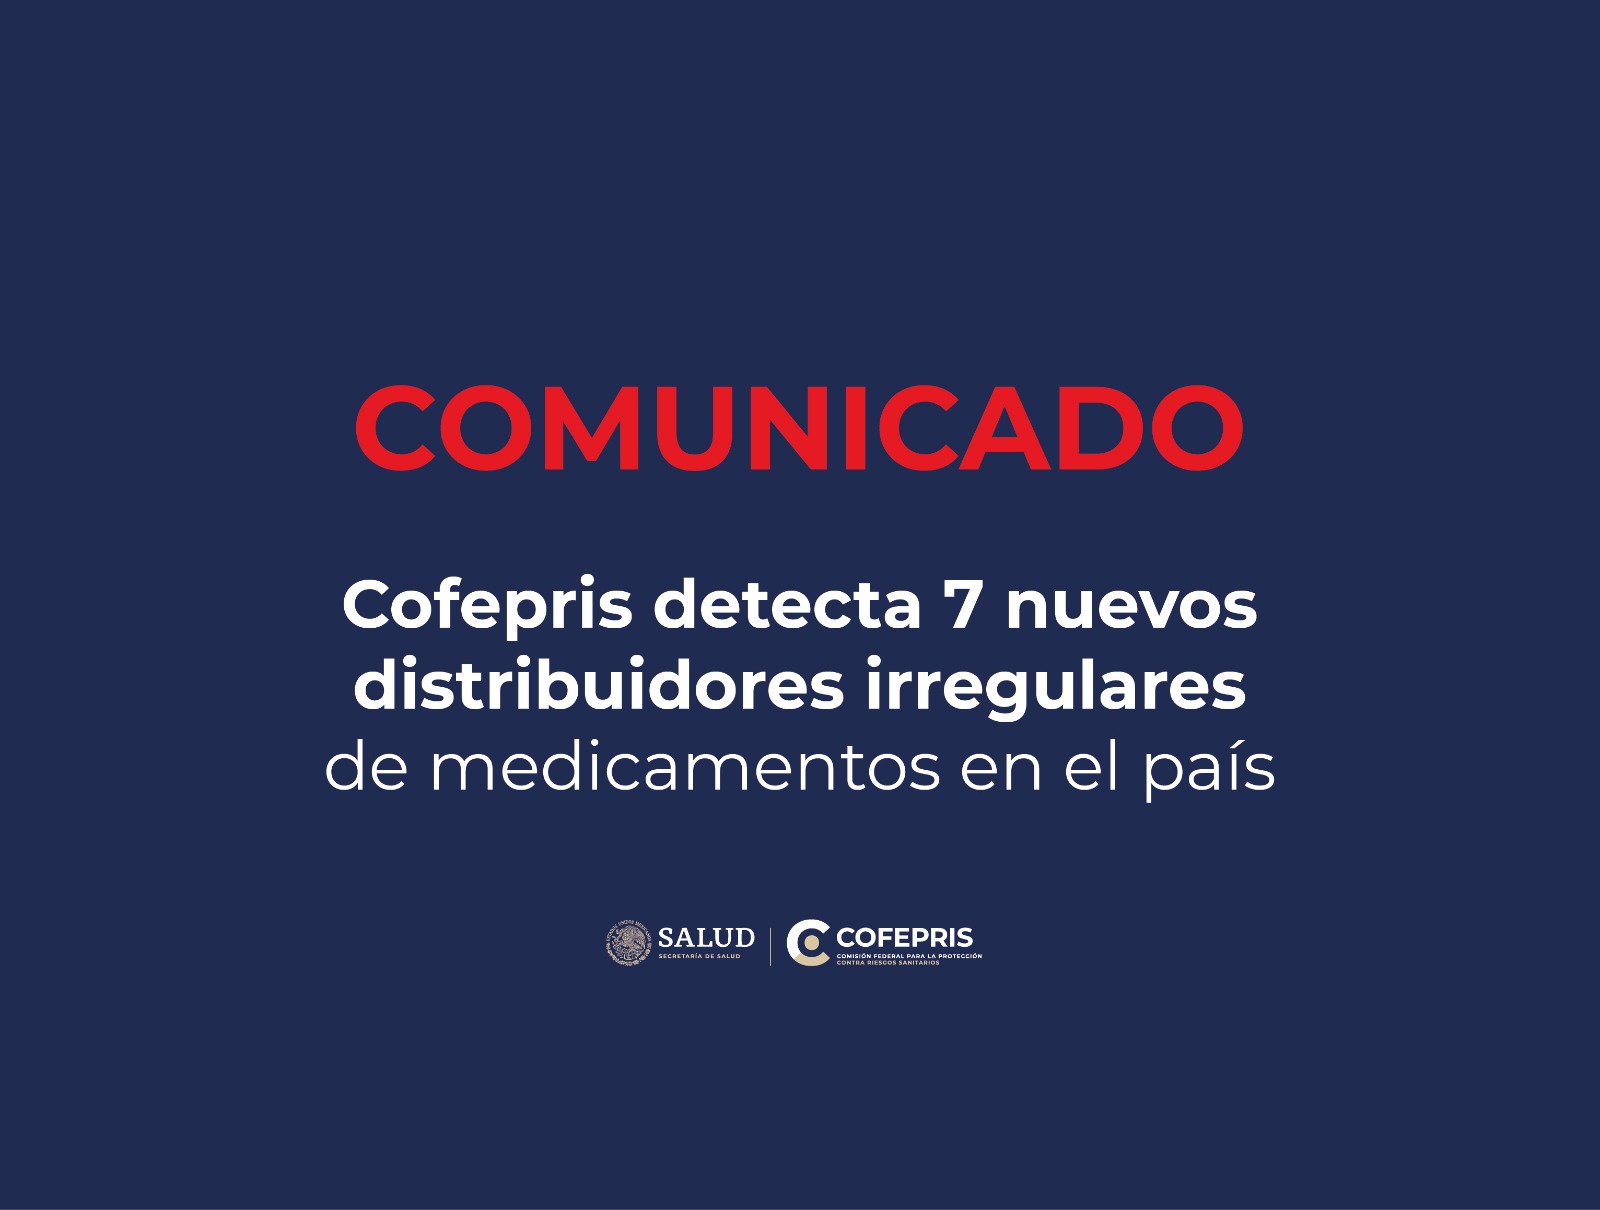 Cofepris detecta 7 nuevos distribuidores irregulares de medicamentos en el país